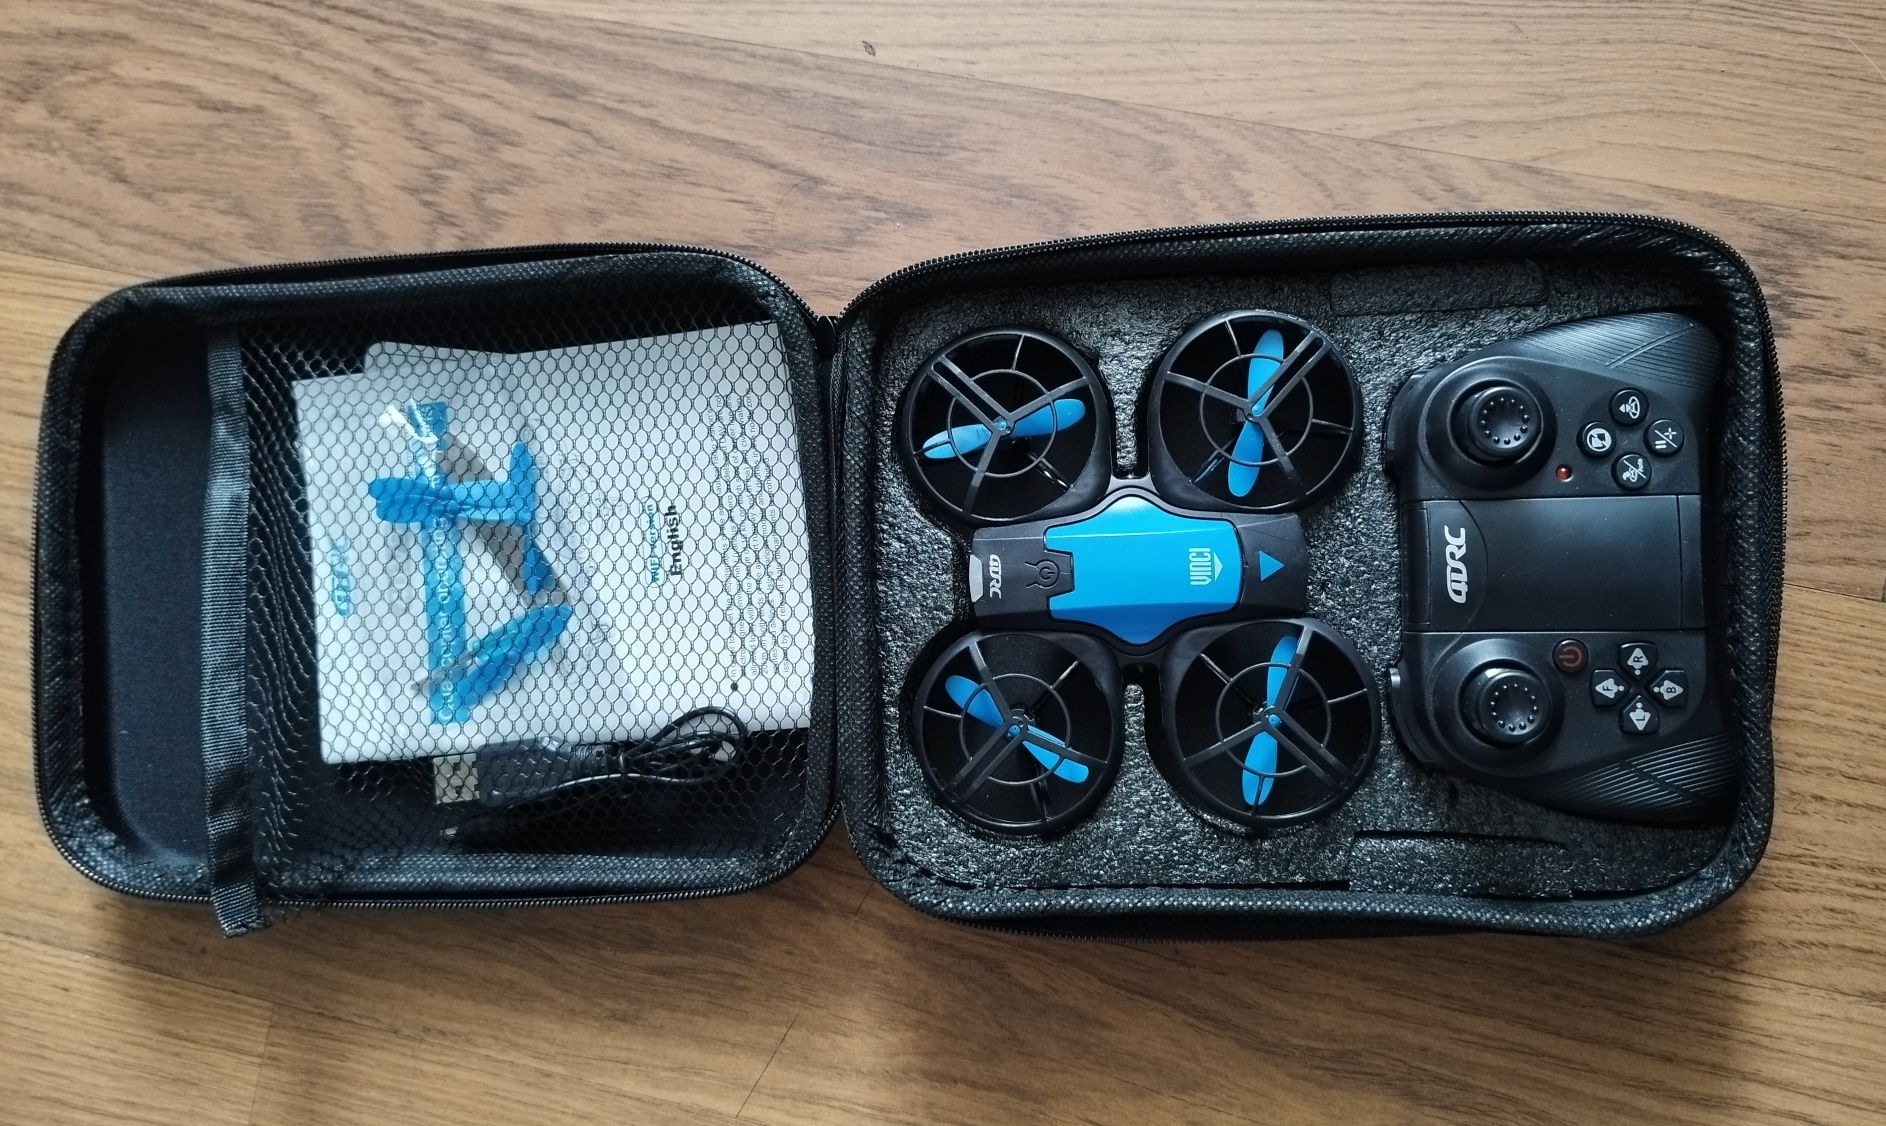 Mini dron quadocopter Vinci 4D-V8